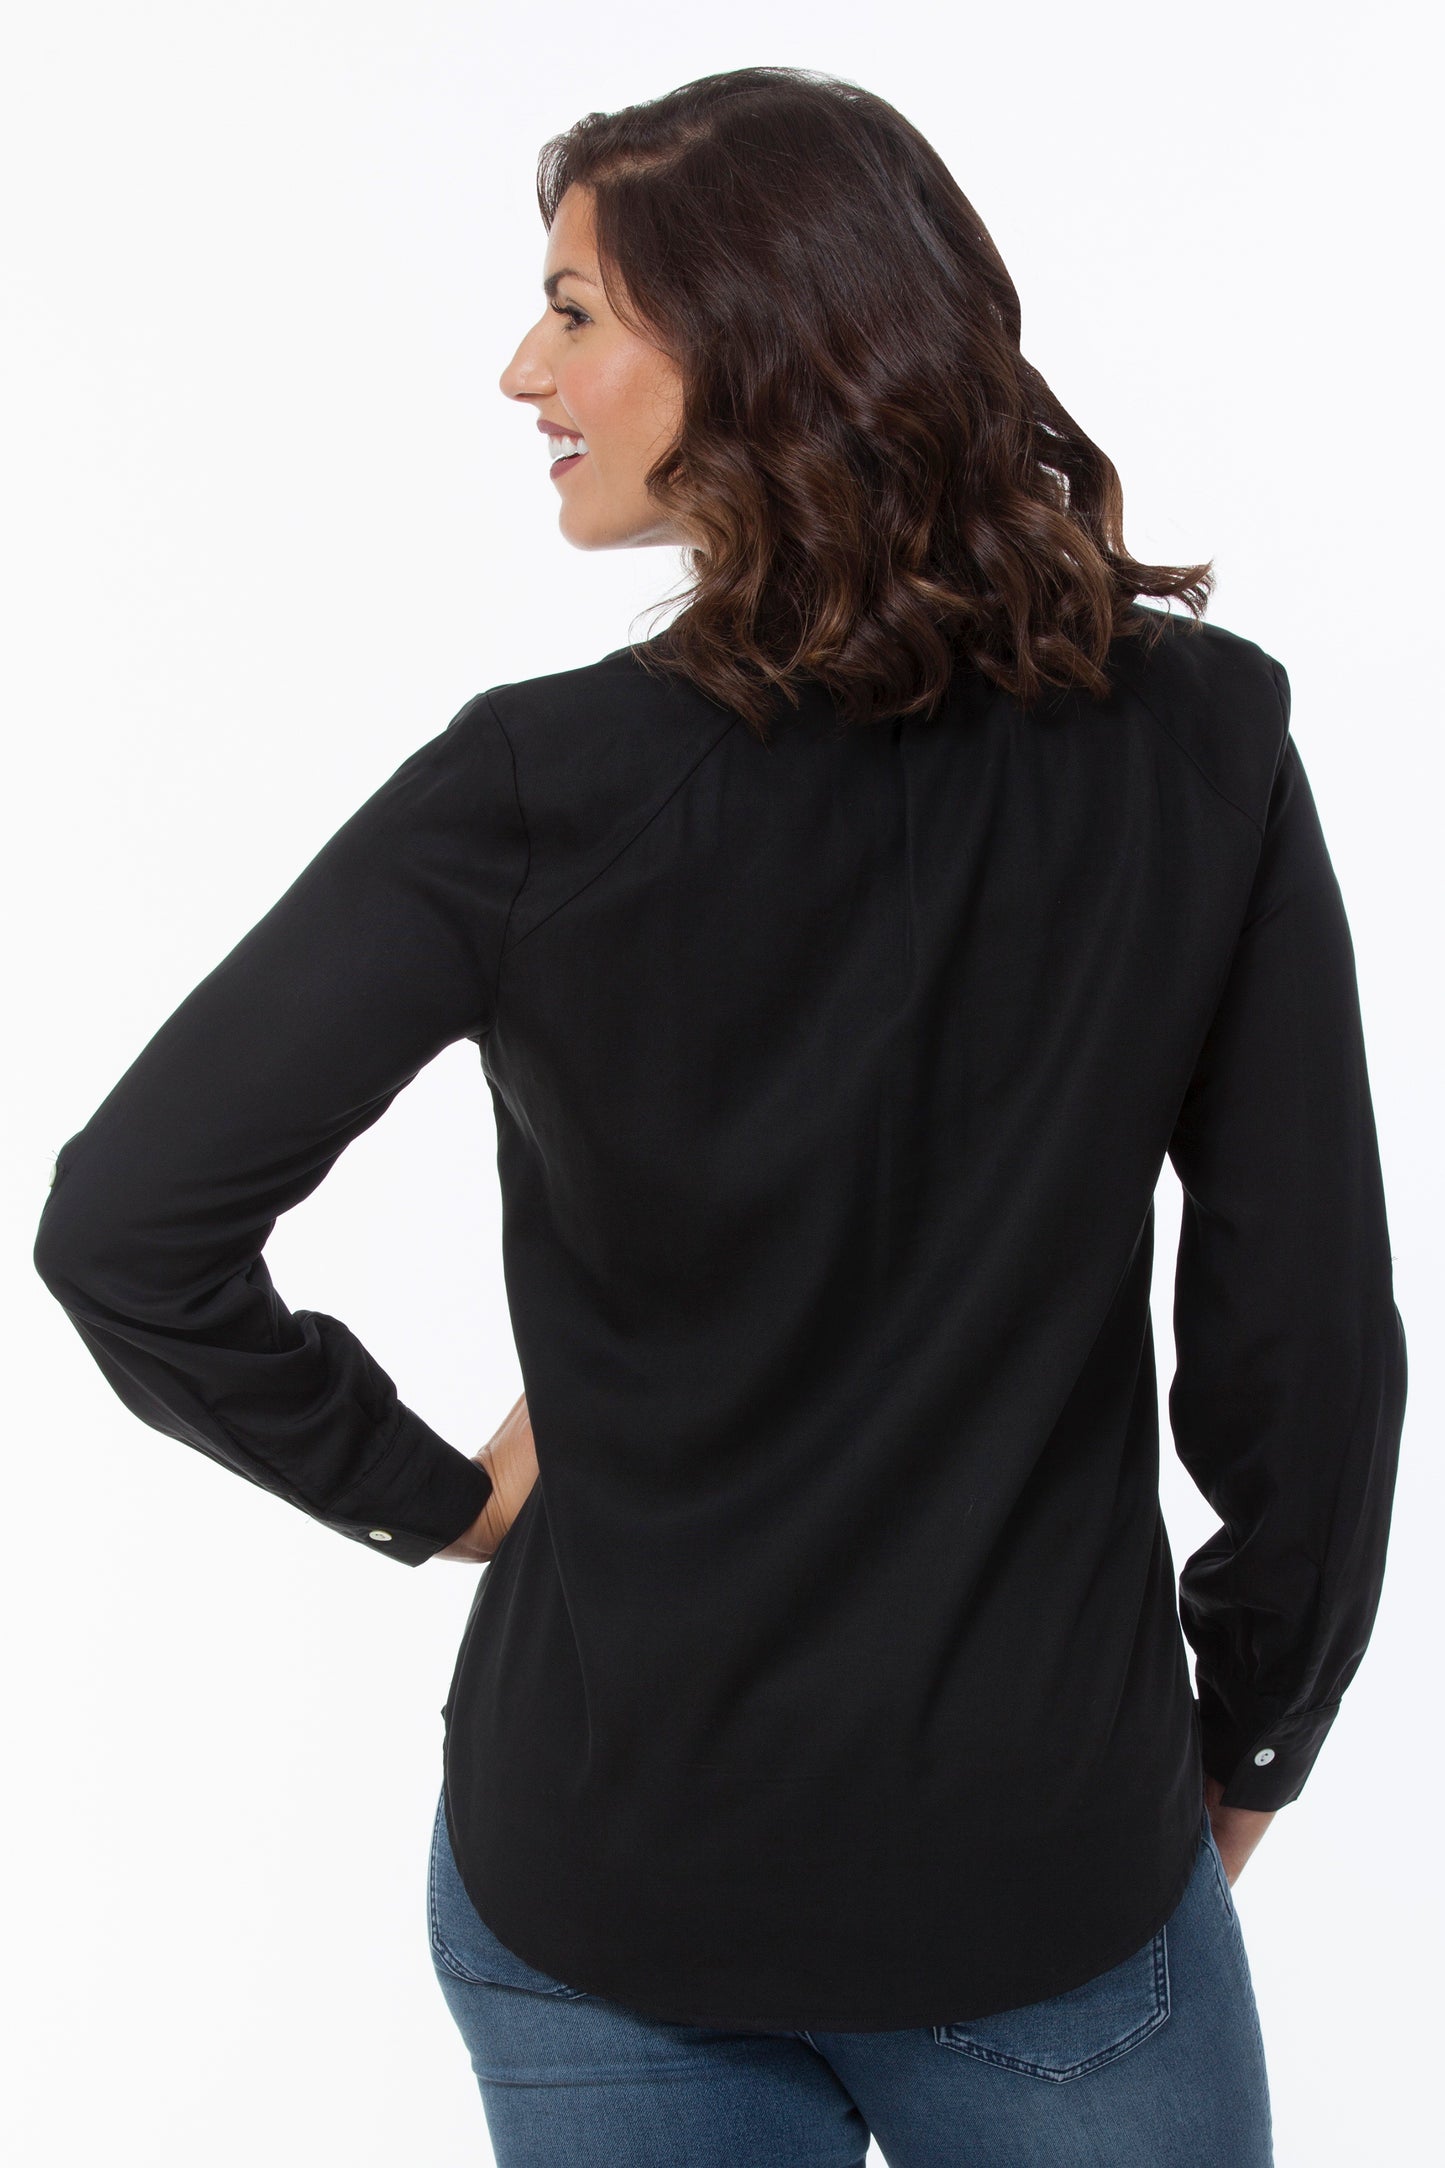 Women's Long Sleeve Button Down Shirt DK22 | LIOR